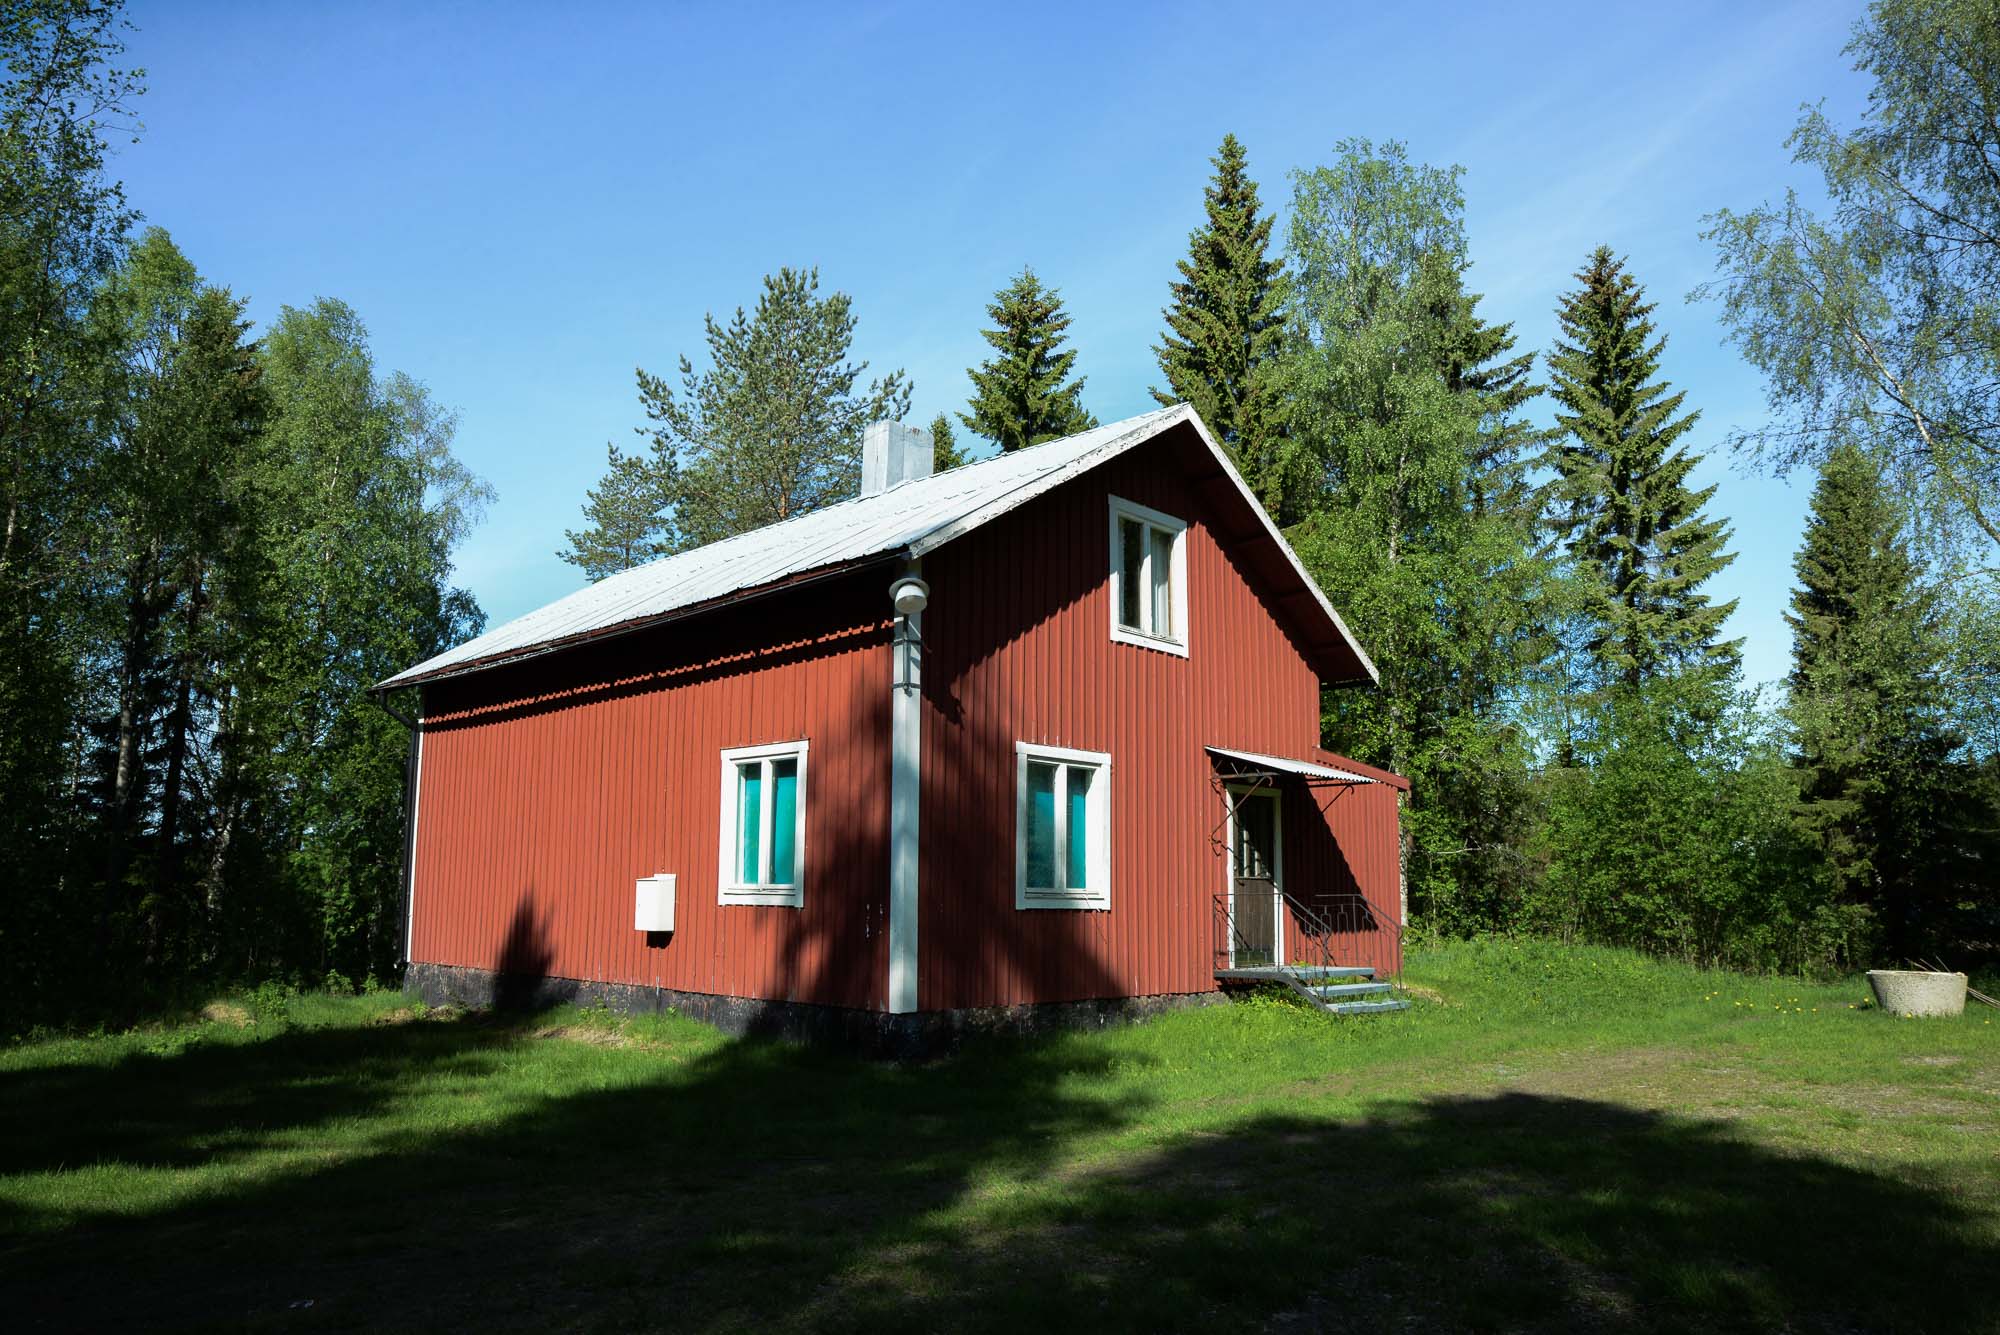 En kort bit från vägen ligger Bösta bönhus omgivet av grönska.